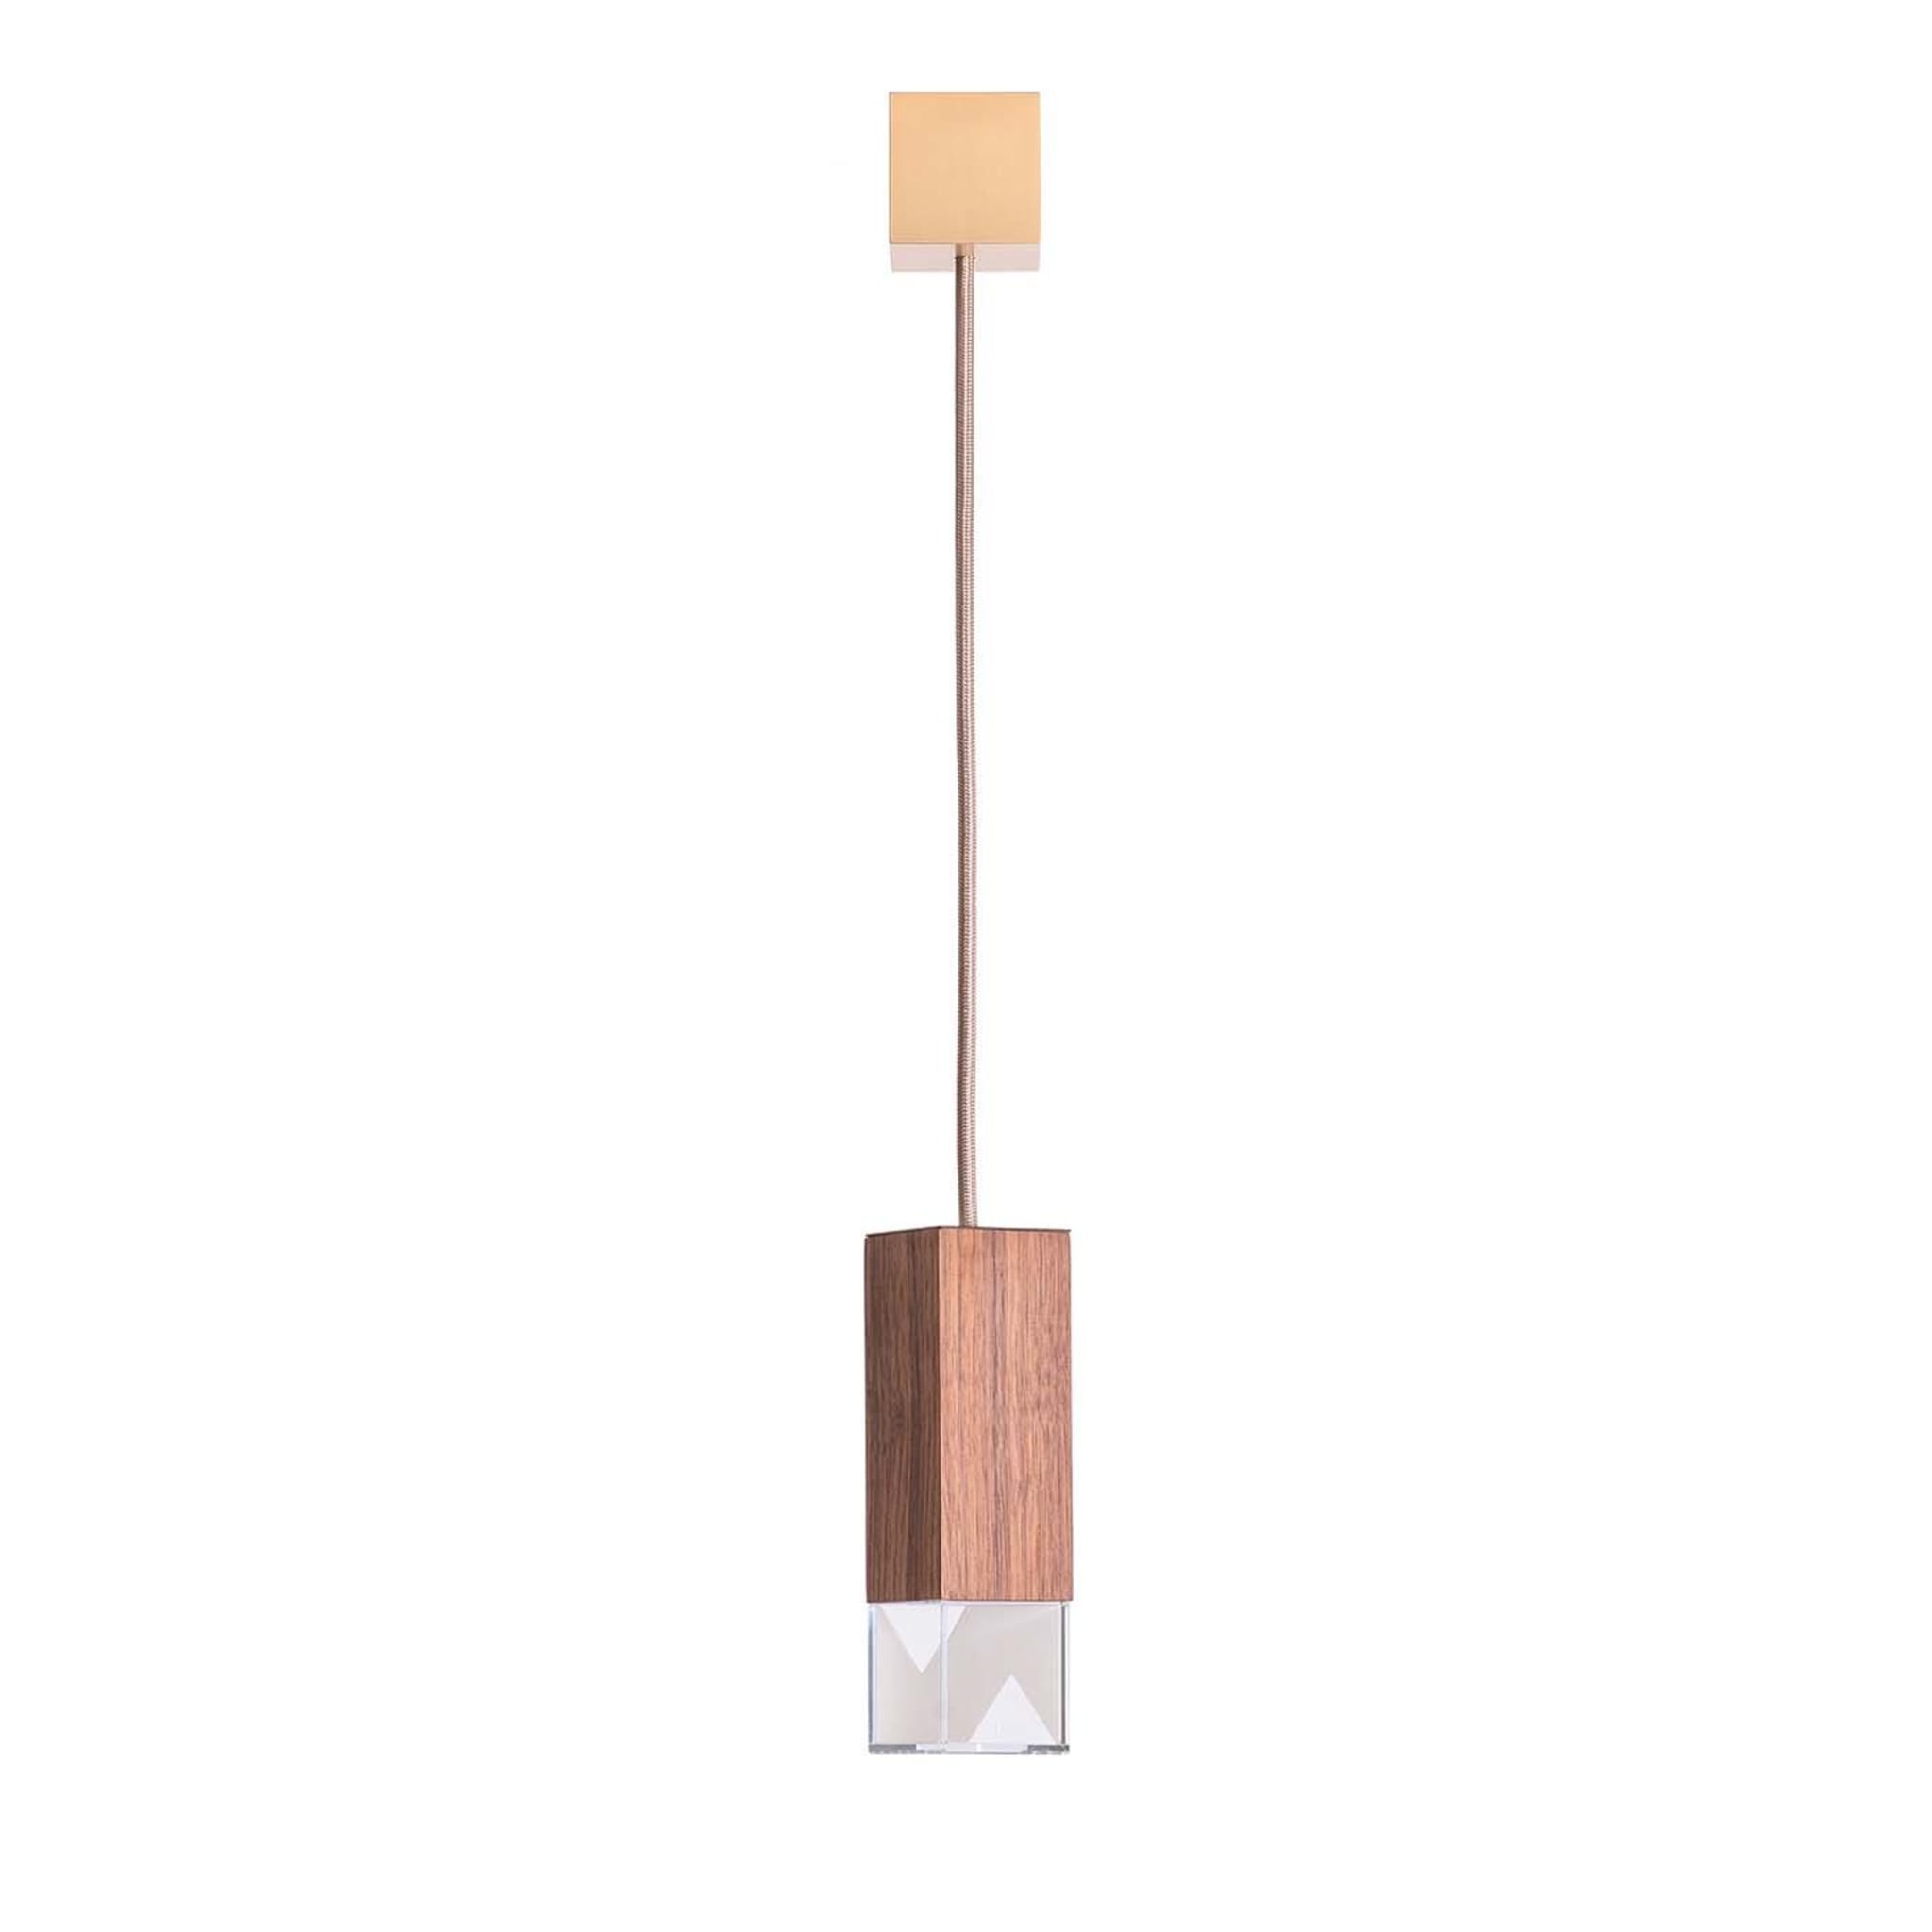 Lamp/One Wood Pendant Lamp - Main view